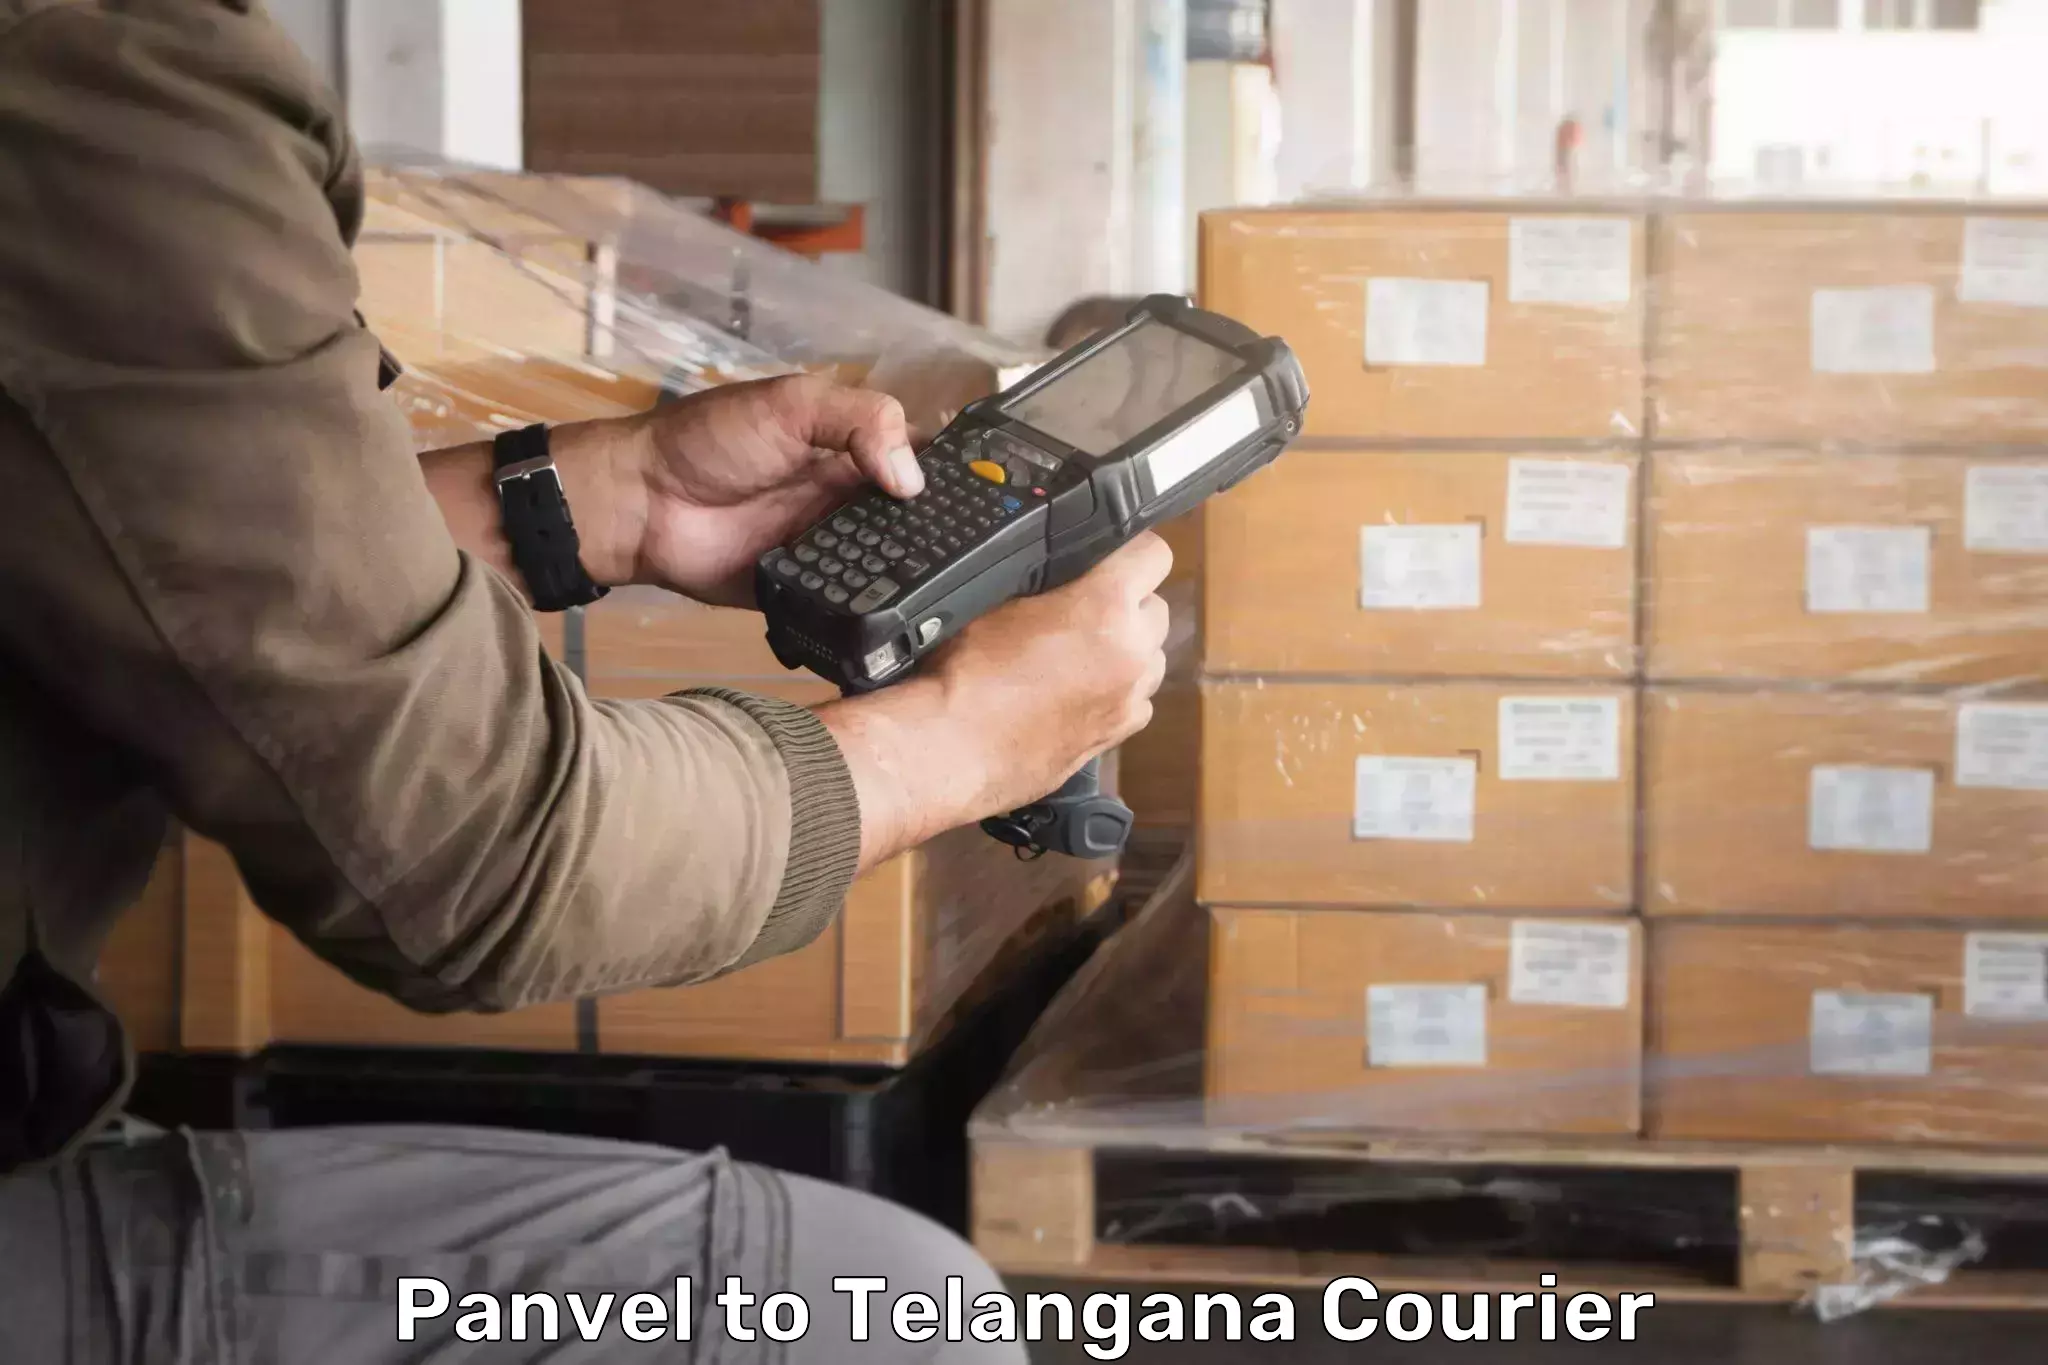 Doorstep delivery service Panvel to Tadoor